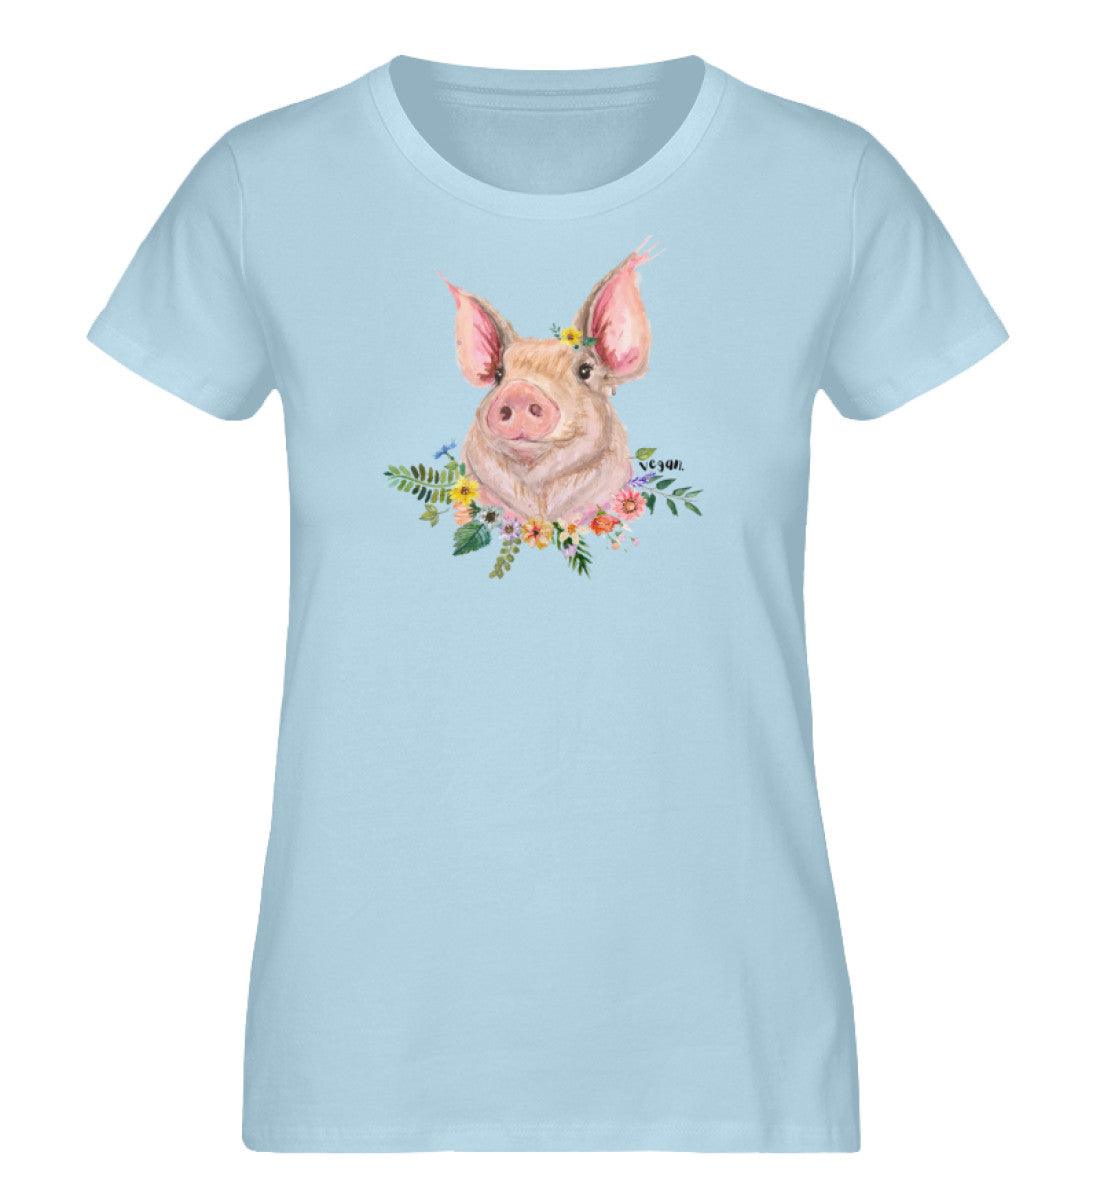 Vegan Schweinchen [Svenja Rakel] - Damen Organic Shirt - Team Vegan © vegan t shirt